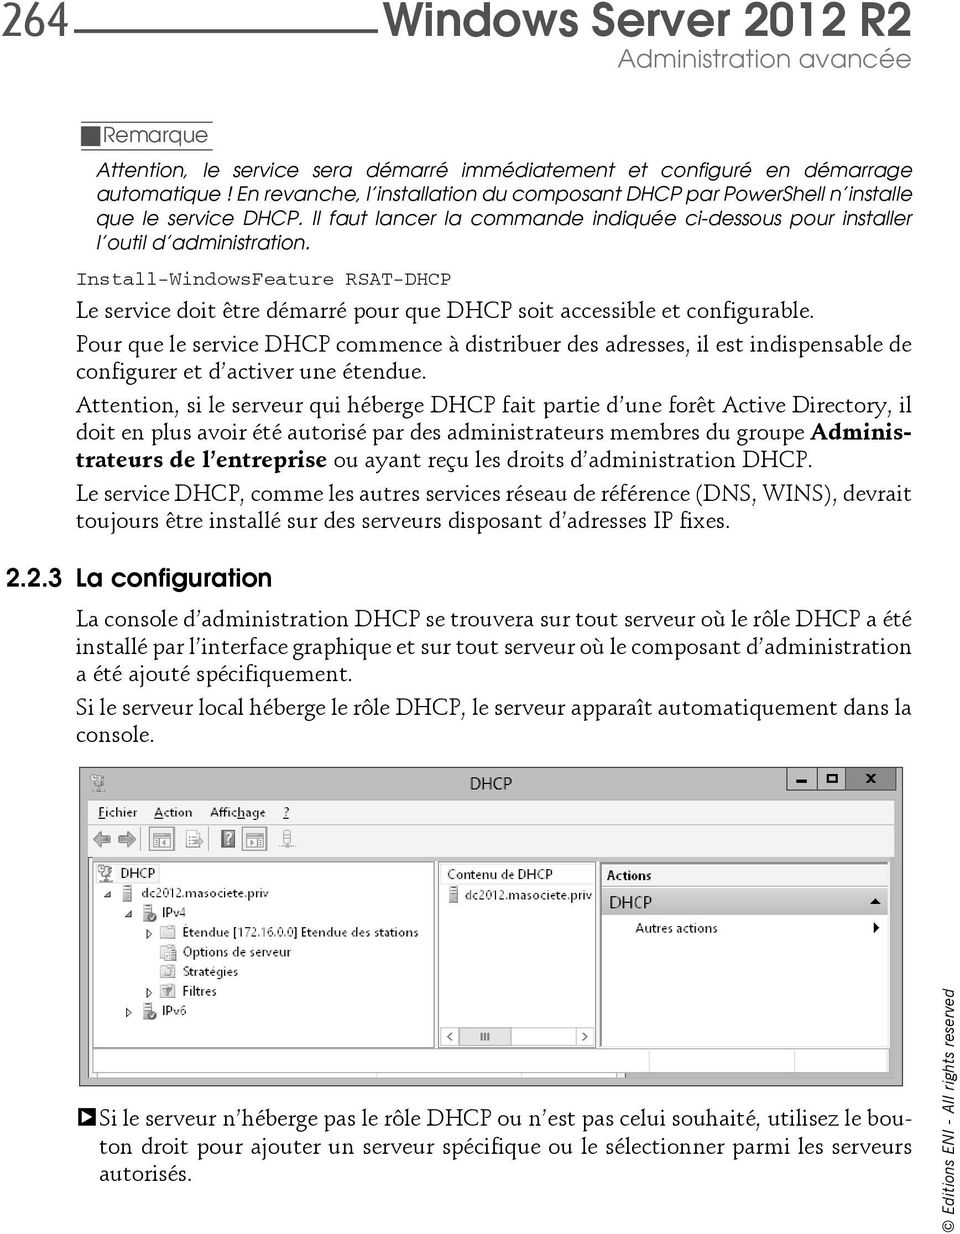 Install-WindowsFeature RSAT-DHCP Le service doit être démarré pour que DHCP soit accessible et configurable.